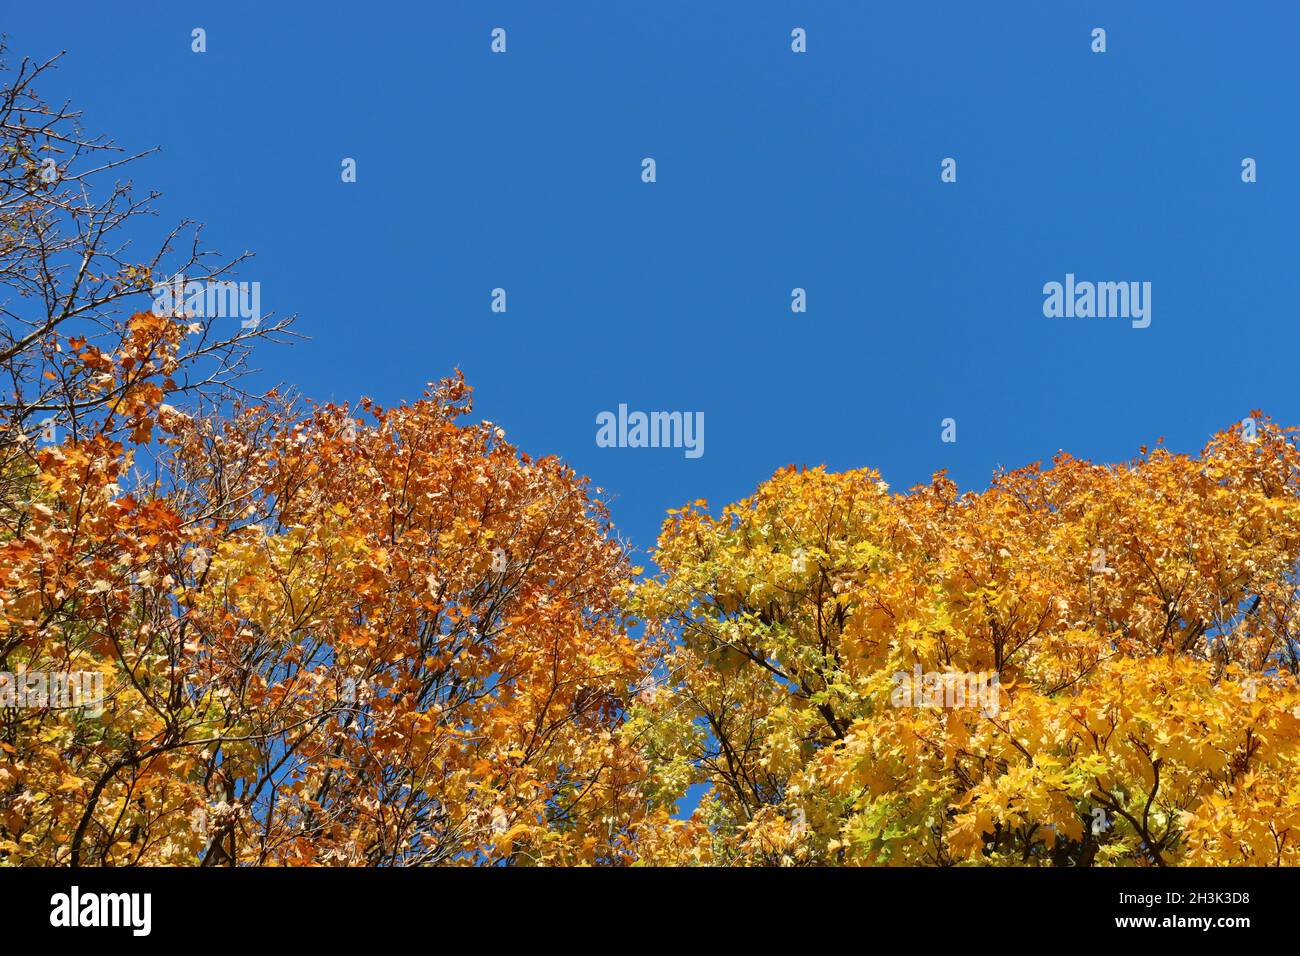 le foglie d'autunno dorate e gialle brillano al sole di fronte ad un cielo blu chiaro, spazio copia Foto Stock